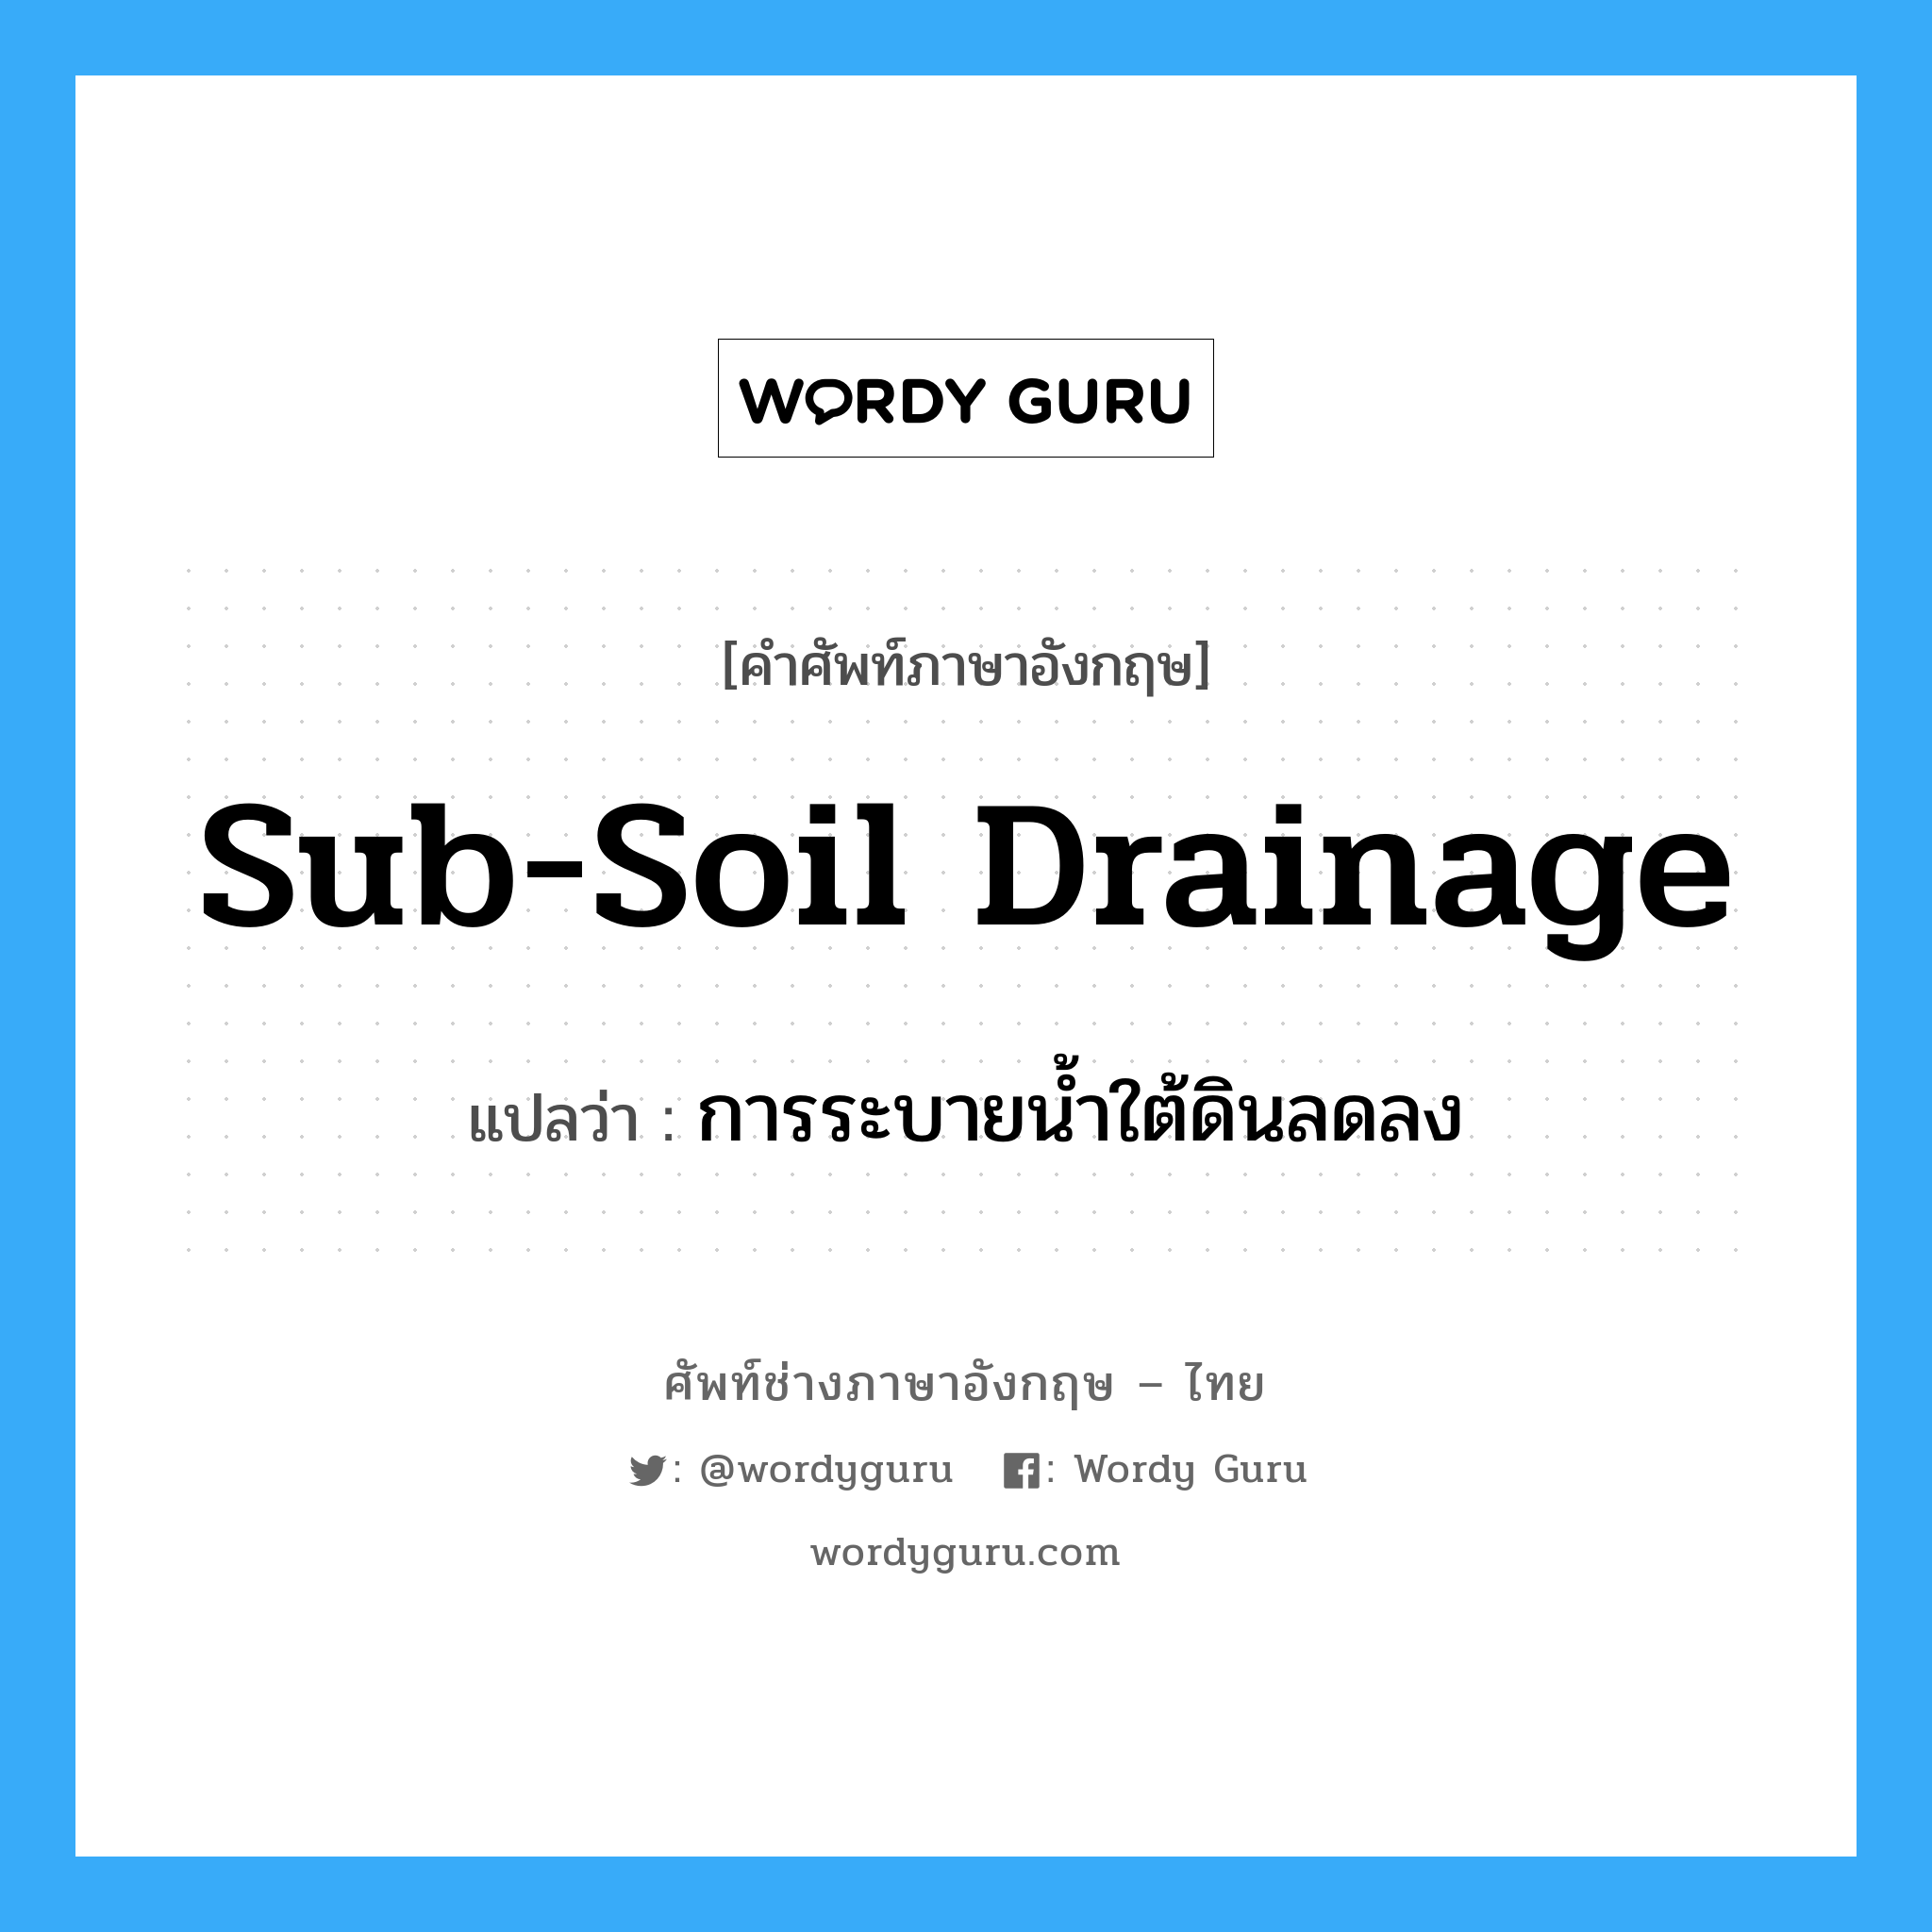 sub-soil drainage แปลว่า?, คำศัพท์ช่างภาษาอังกฤษ - ไทย sub-soil drainage คำศัพท์ภาษาอังกฤษ sub-soil drainage แปลว่า การระบายน้ำใต้ดินลดลง